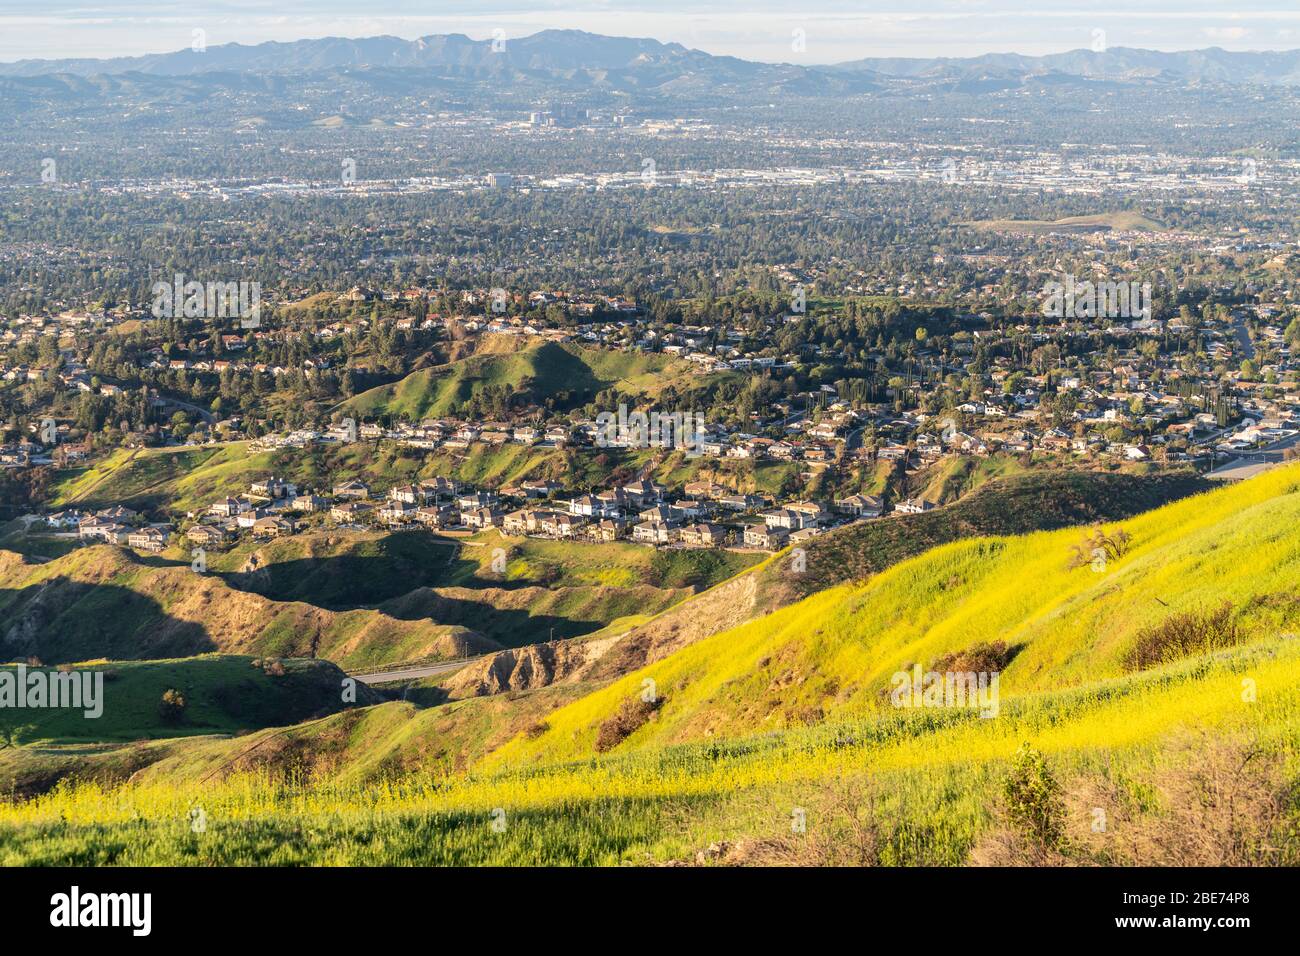 Wildflower Berghänge und Valley View Häuser in der San Fernando Valley Gegend im Norden von Los Angeles, Kalifornien. Stockfoto